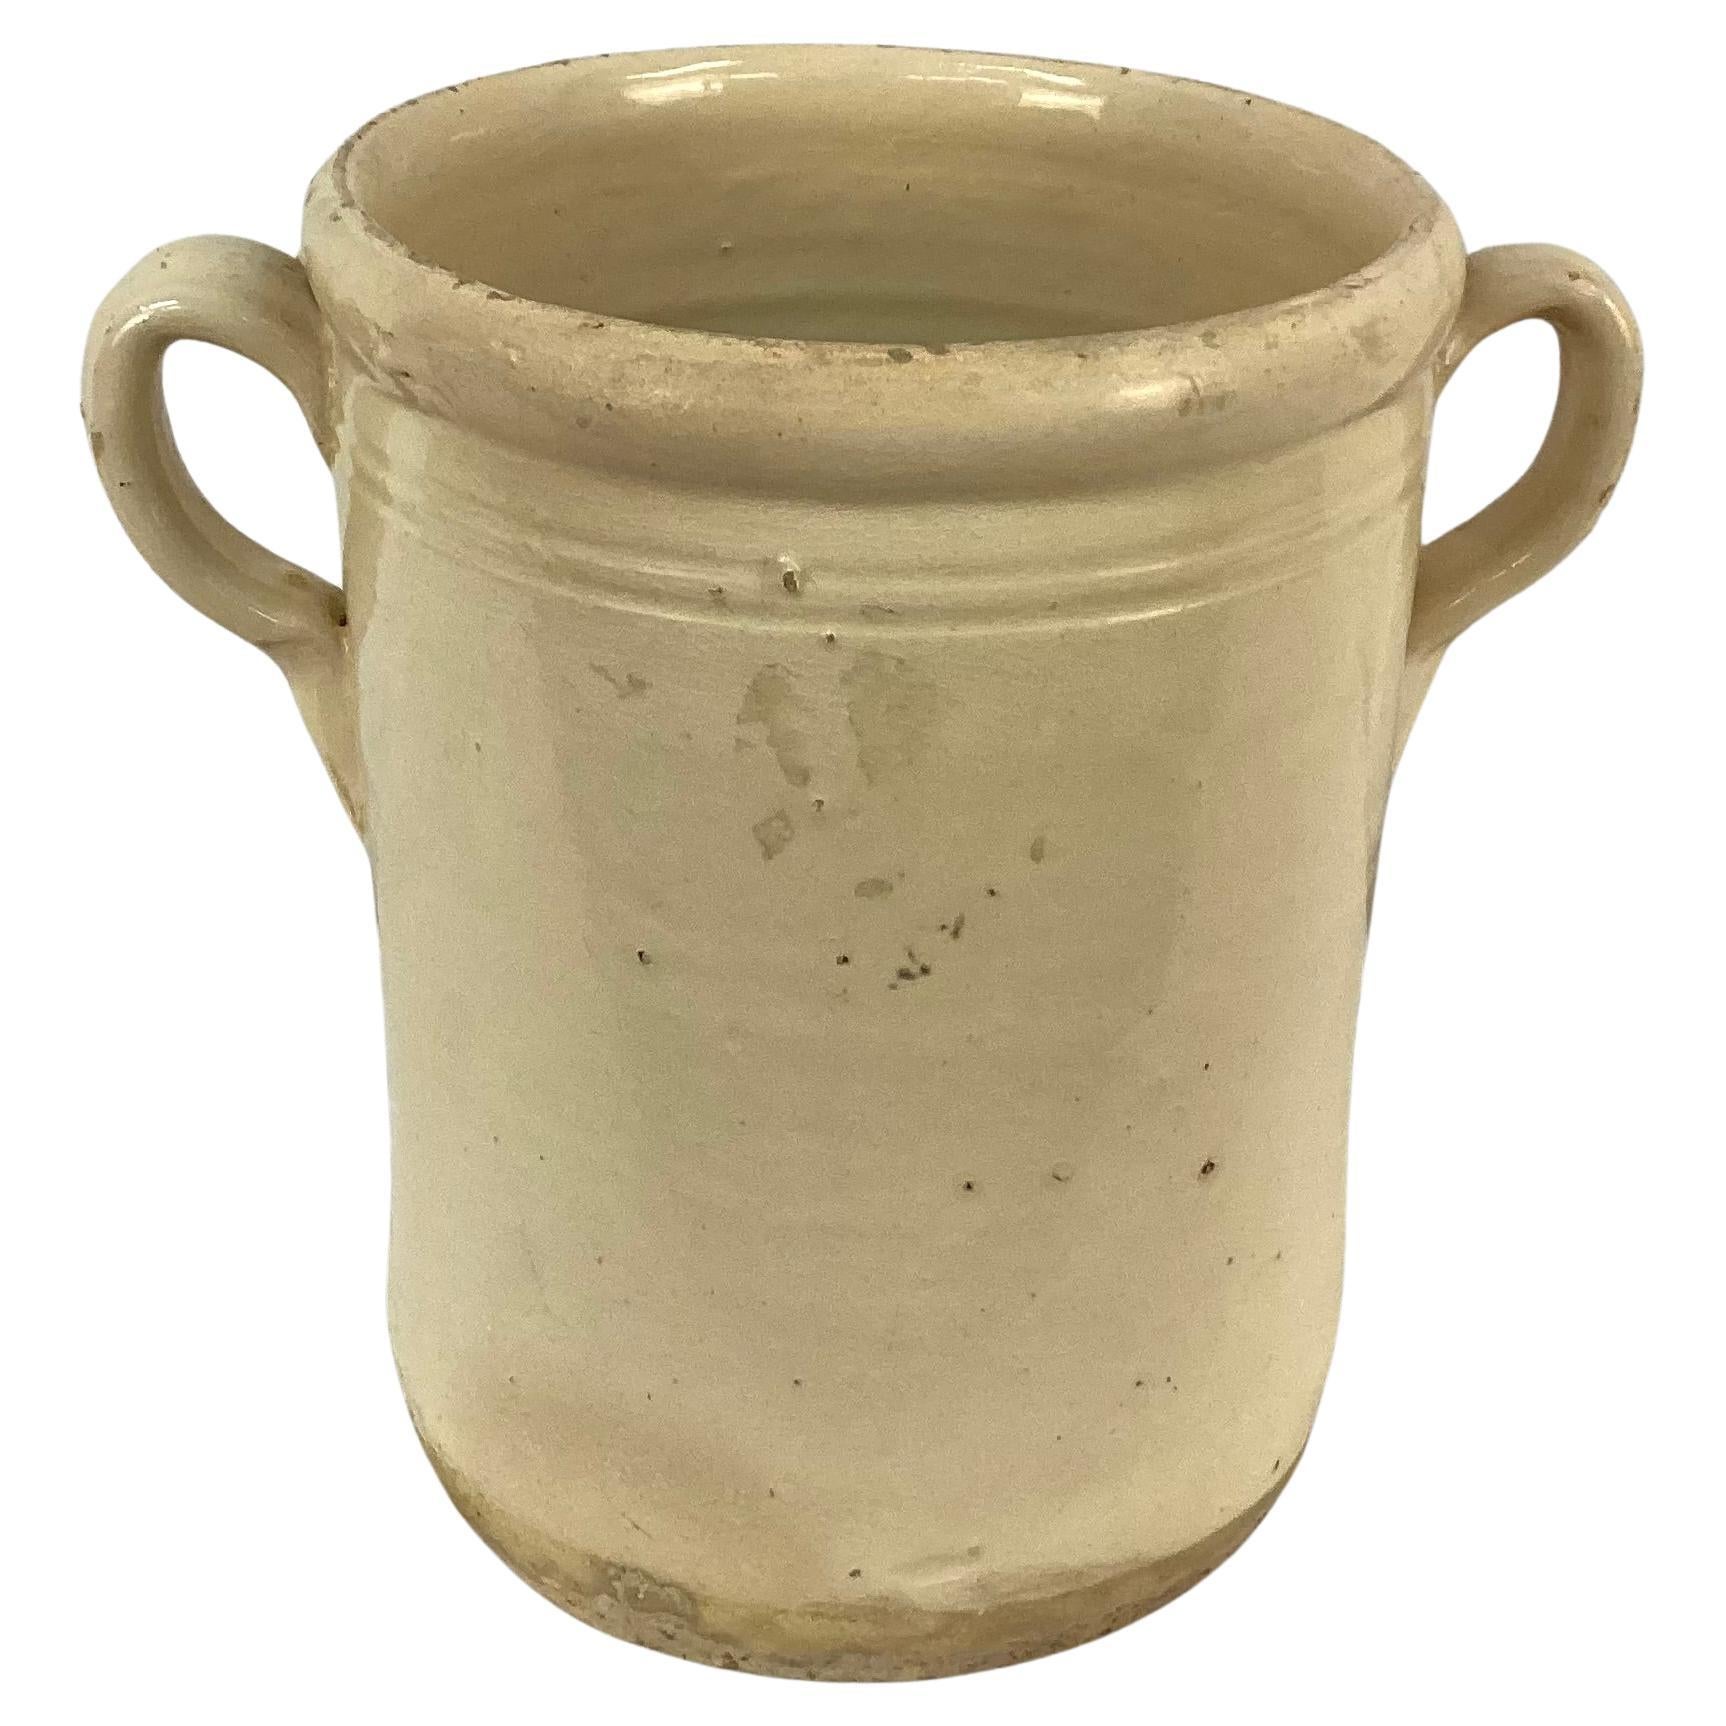 Italienischer Chiminea-Keramiktopf aus dem 19. Jahrhundert mit Griffen. Diese Töpfe wurden zur Aufbewahrung von Lebensmitteln wie Obst, Fleisch oder Gemüse verwendet. Sie wurden für die Verwendung in Verbindung mit einem Holzofen oder einem Kamin